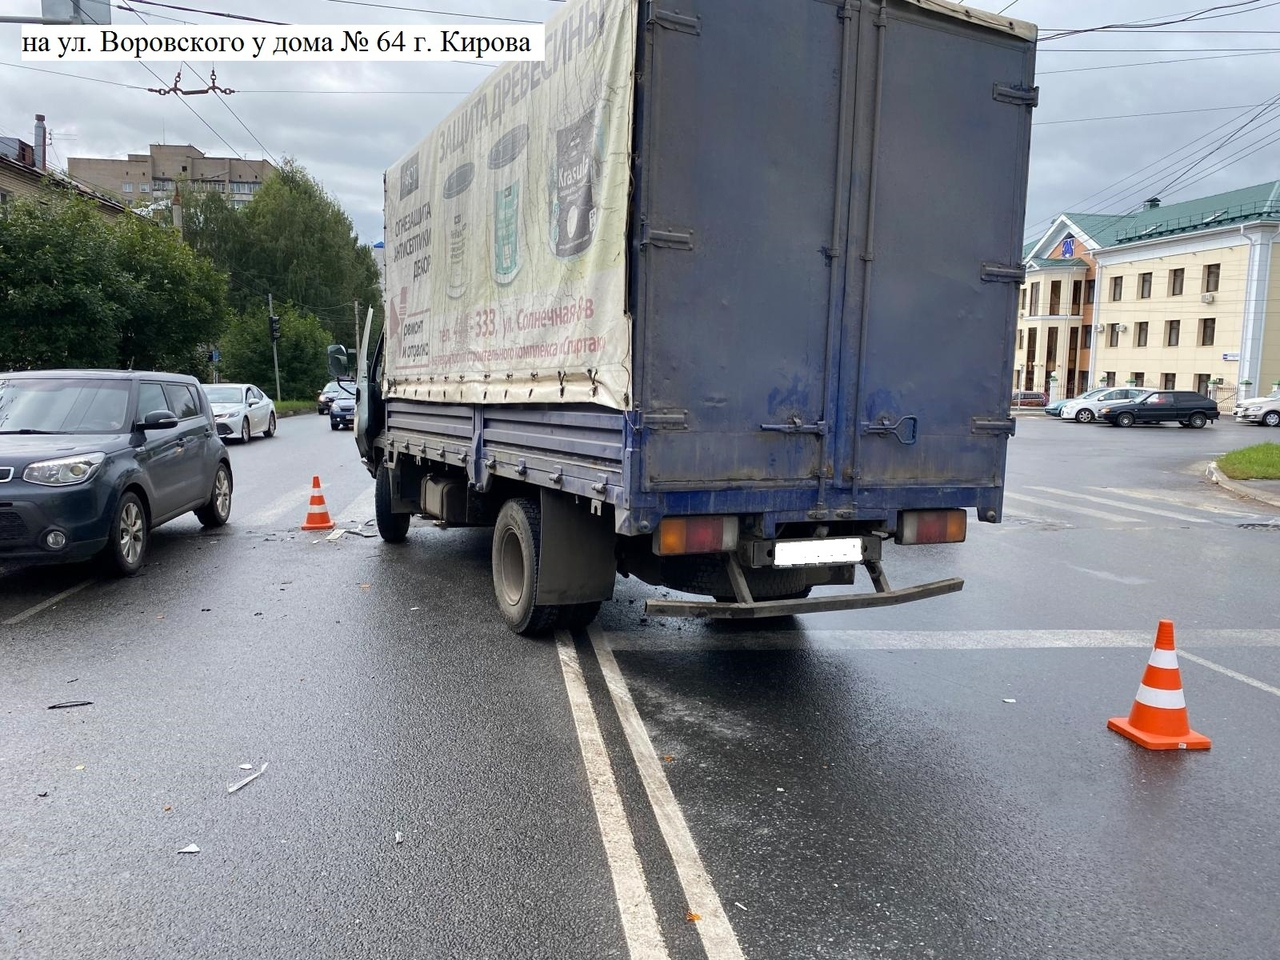 В ДТП с грузовиком в центре Кирова пострадала 6-летняя девочка